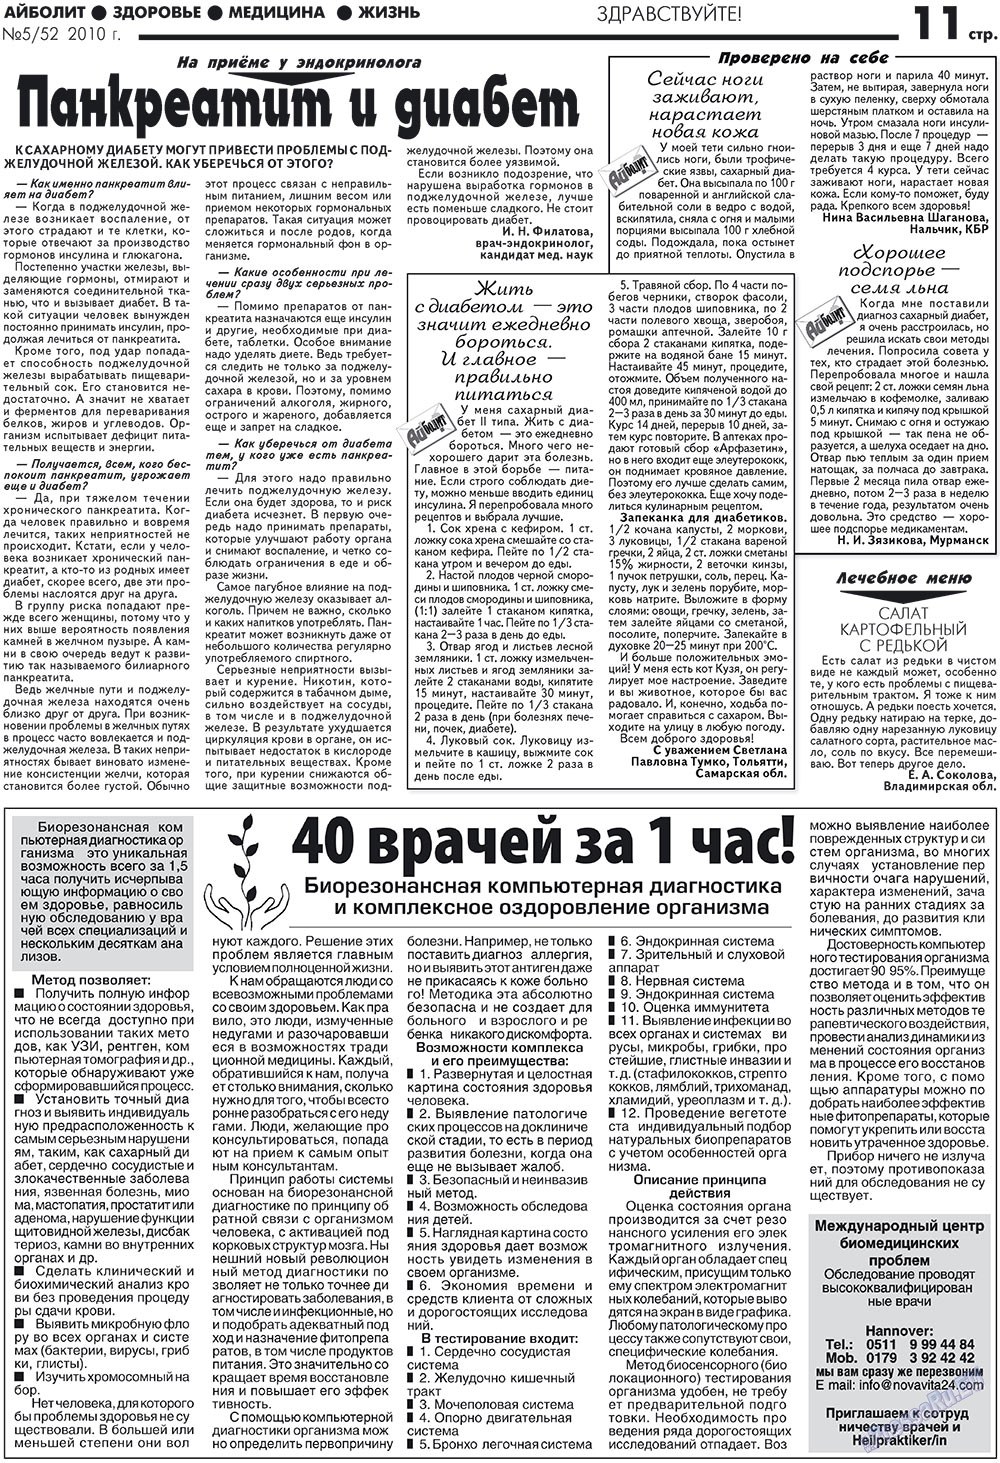 АйБолит, газета. 2010 №5 стр.11